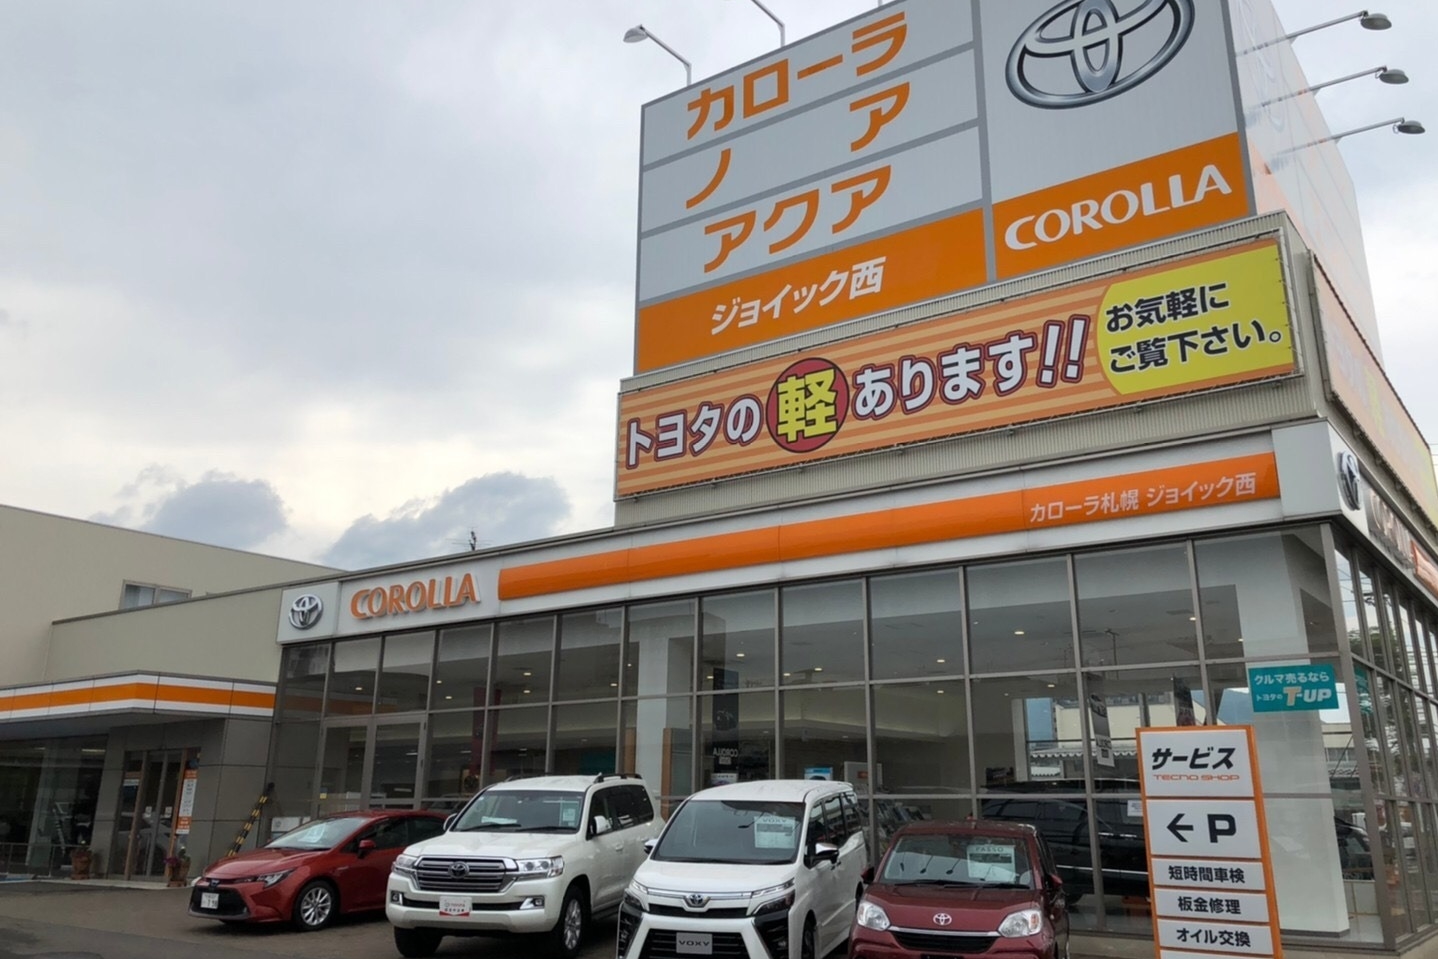 ジョイック西 トヨタカローラ札幌株式会社 トヨタ自動車webサイト